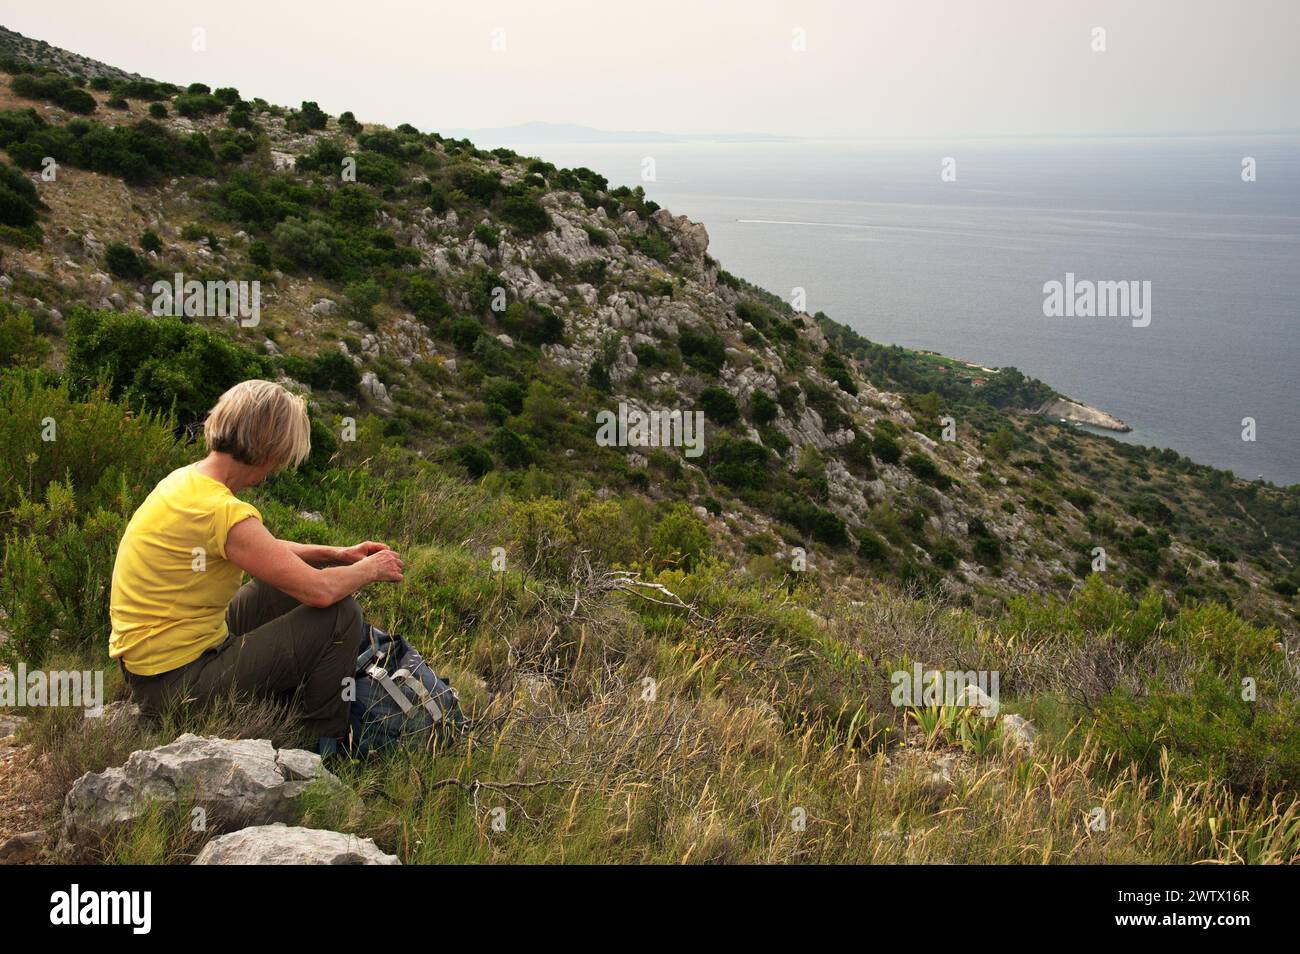 Senior woman sitting on mountain peak with beautiful view on Adriatic sea Stock Photo